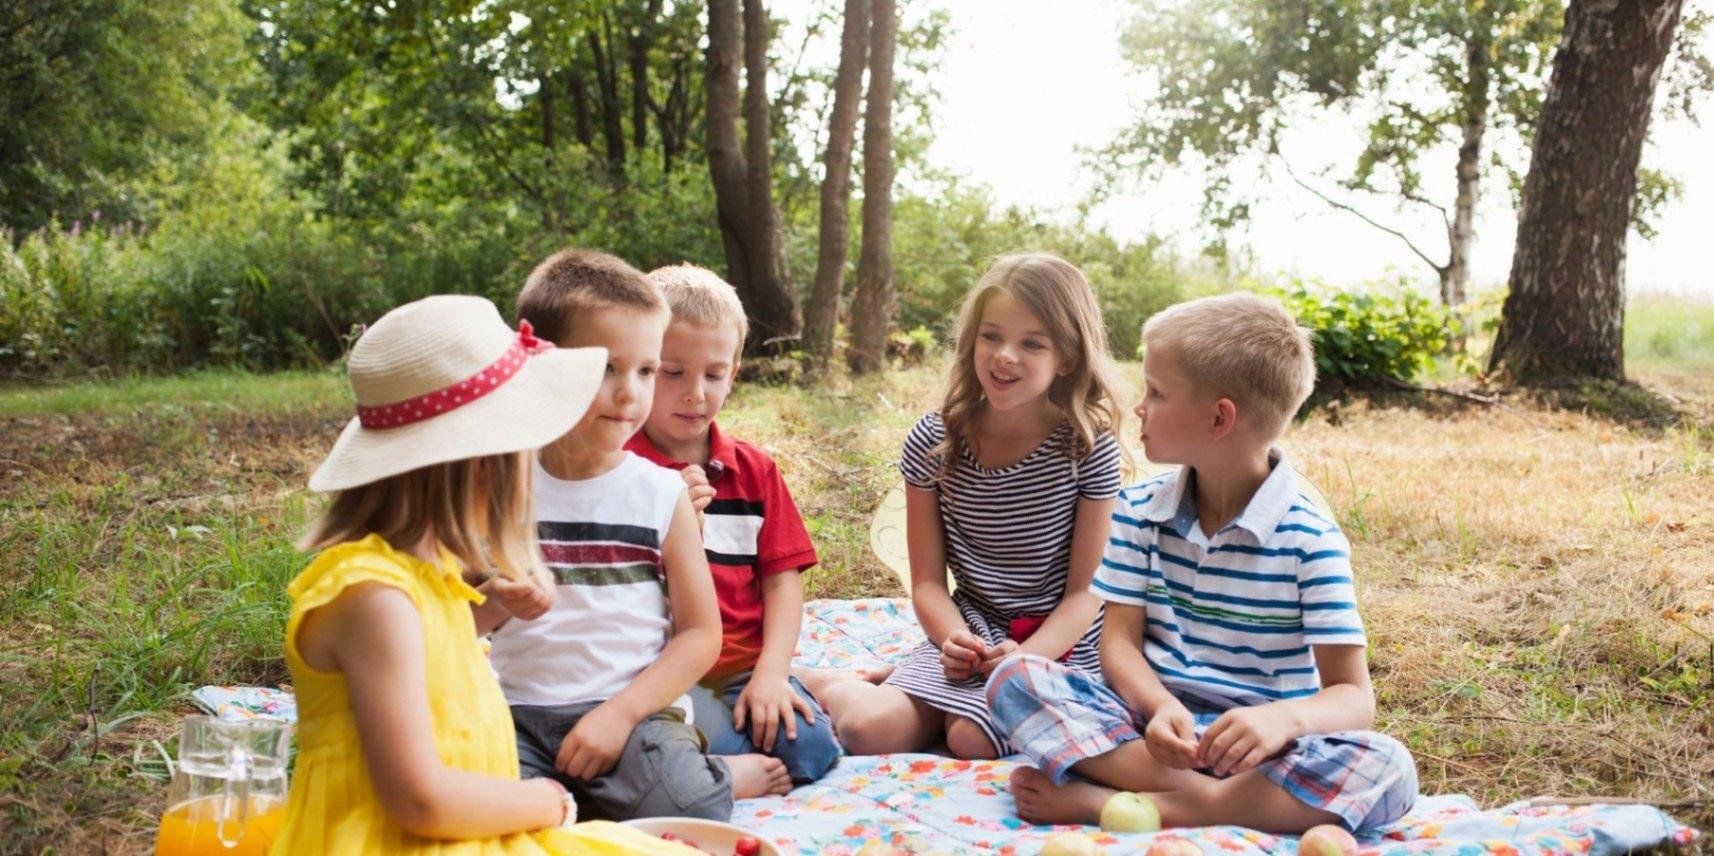 Провели пикник. Пикник для детей в детском саду. Пикник на природе. Школьники на пикнике. Дети на пикнике в парке.